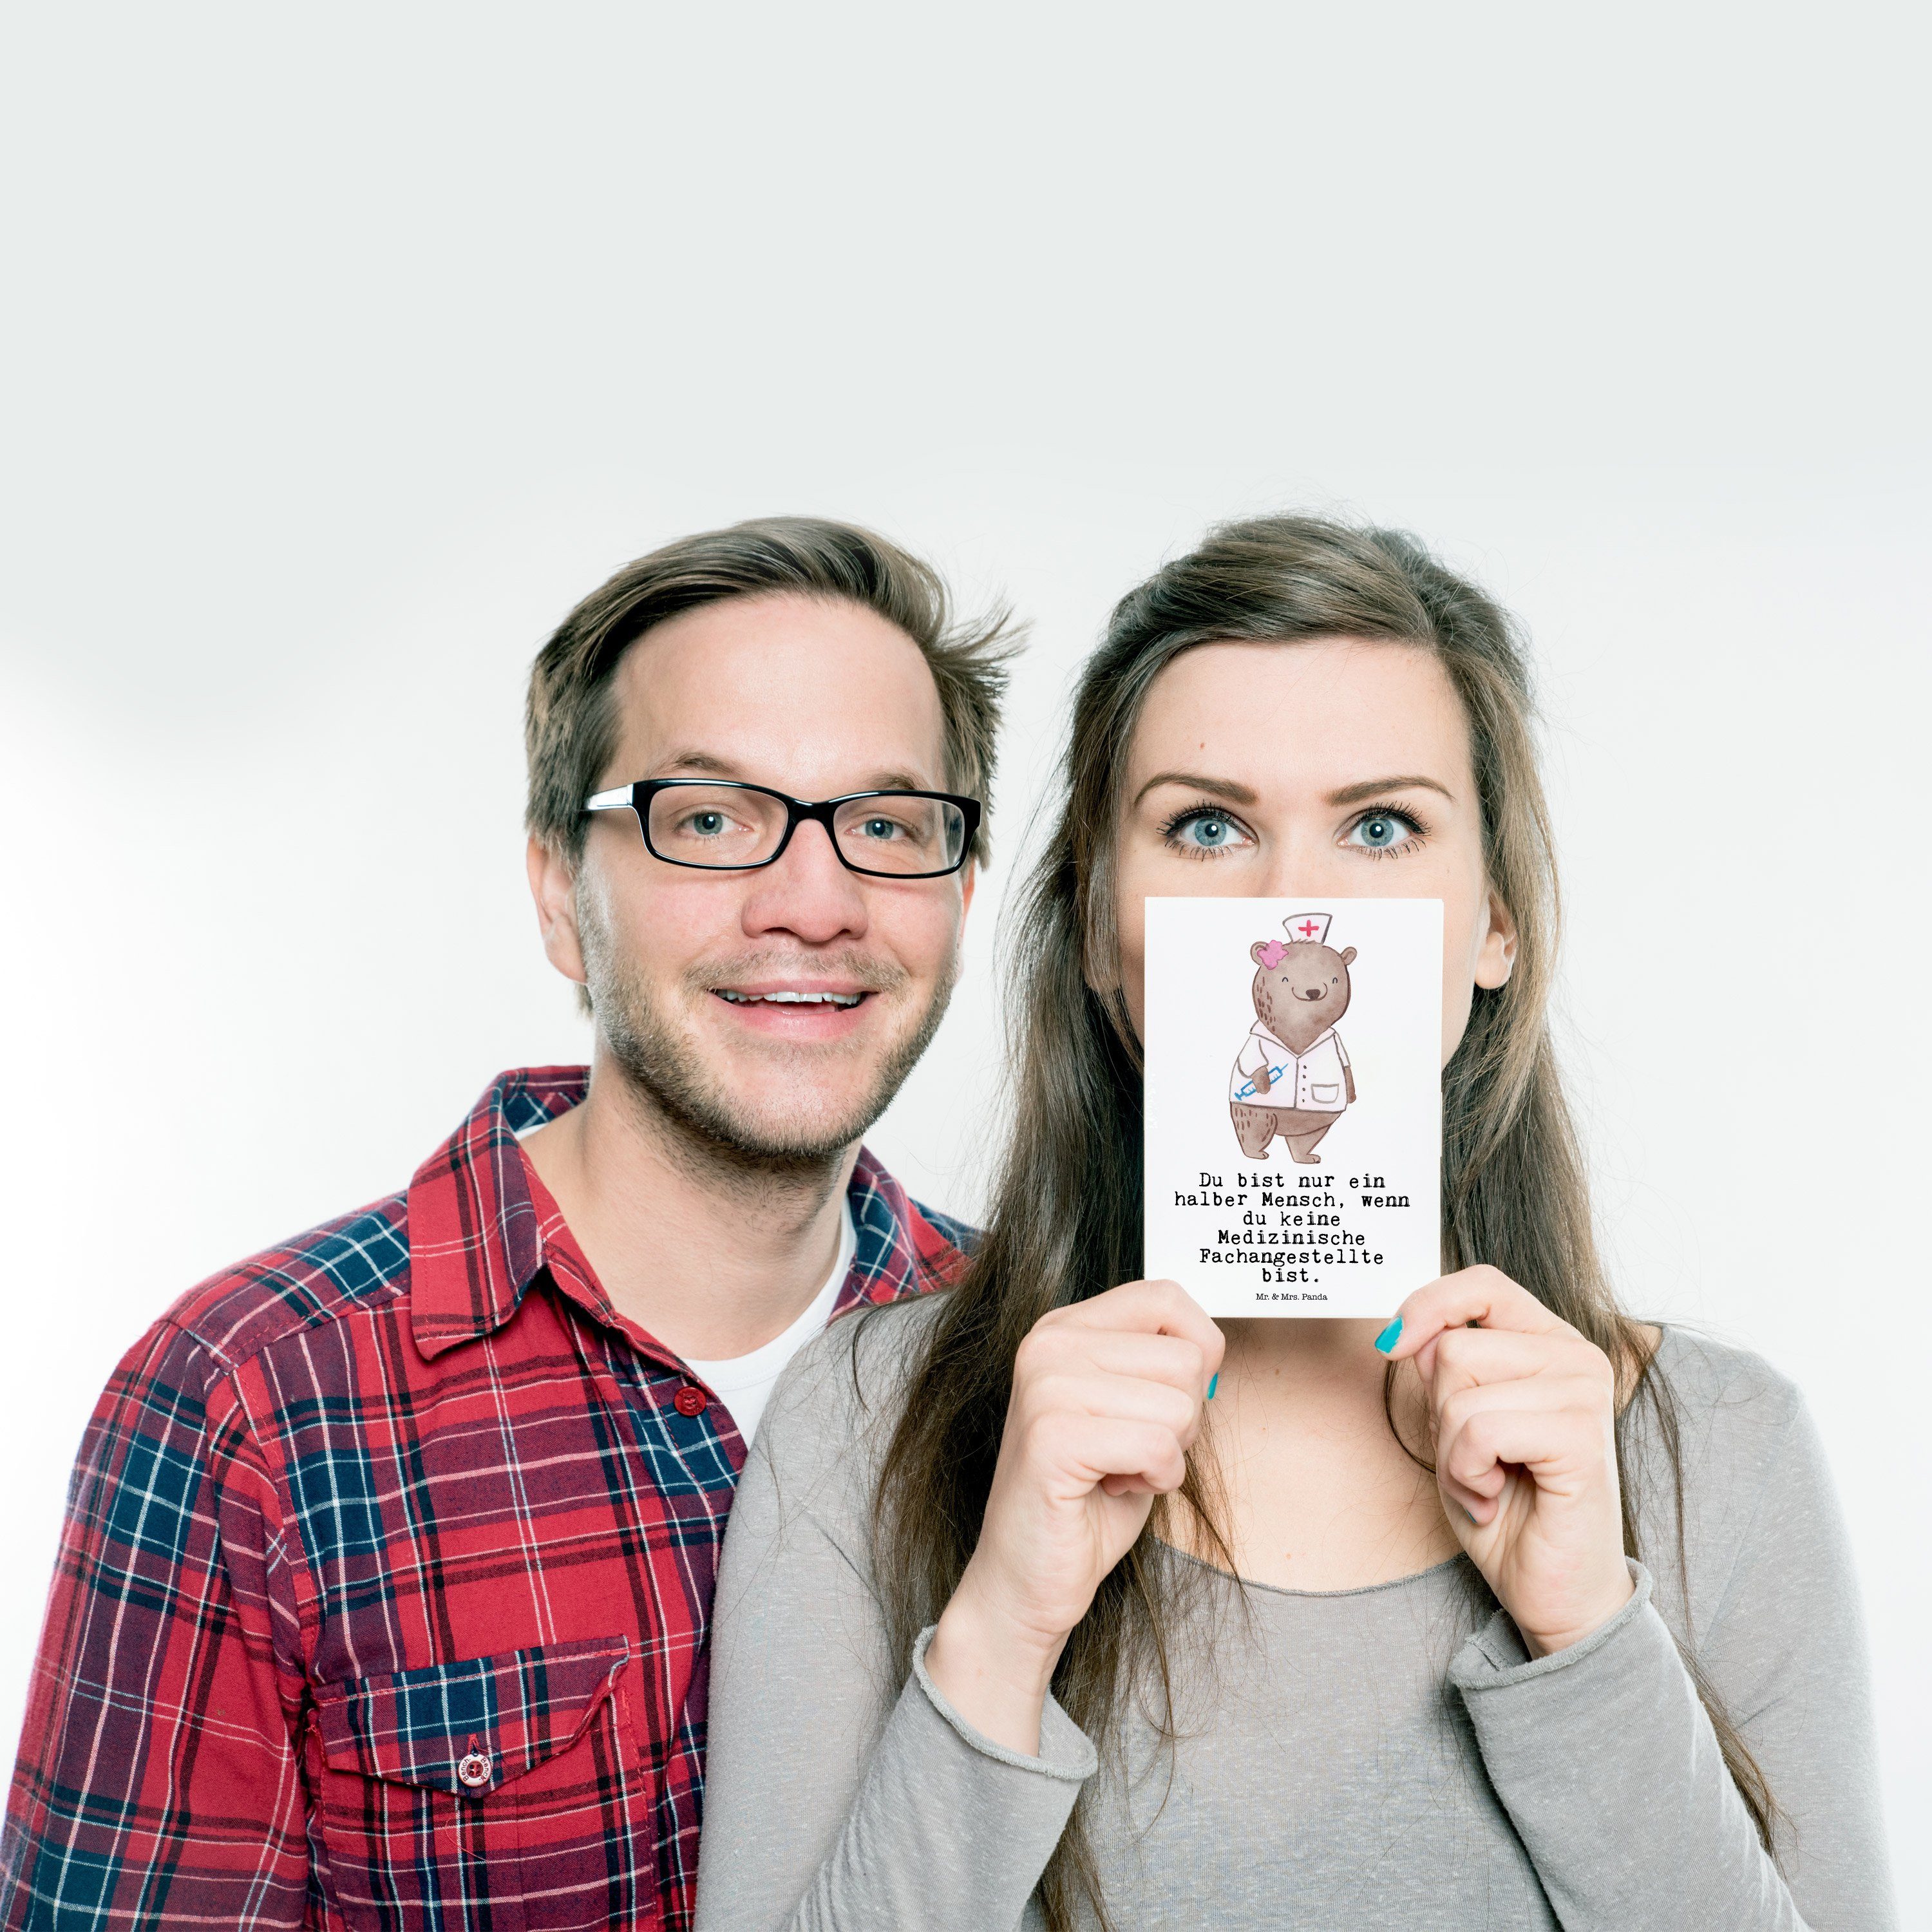 Mr. & Mrs. Grußk mit Panda Medizinische Postkarte Fachangestellte Weiß Beruf, - - Herz Geschenk